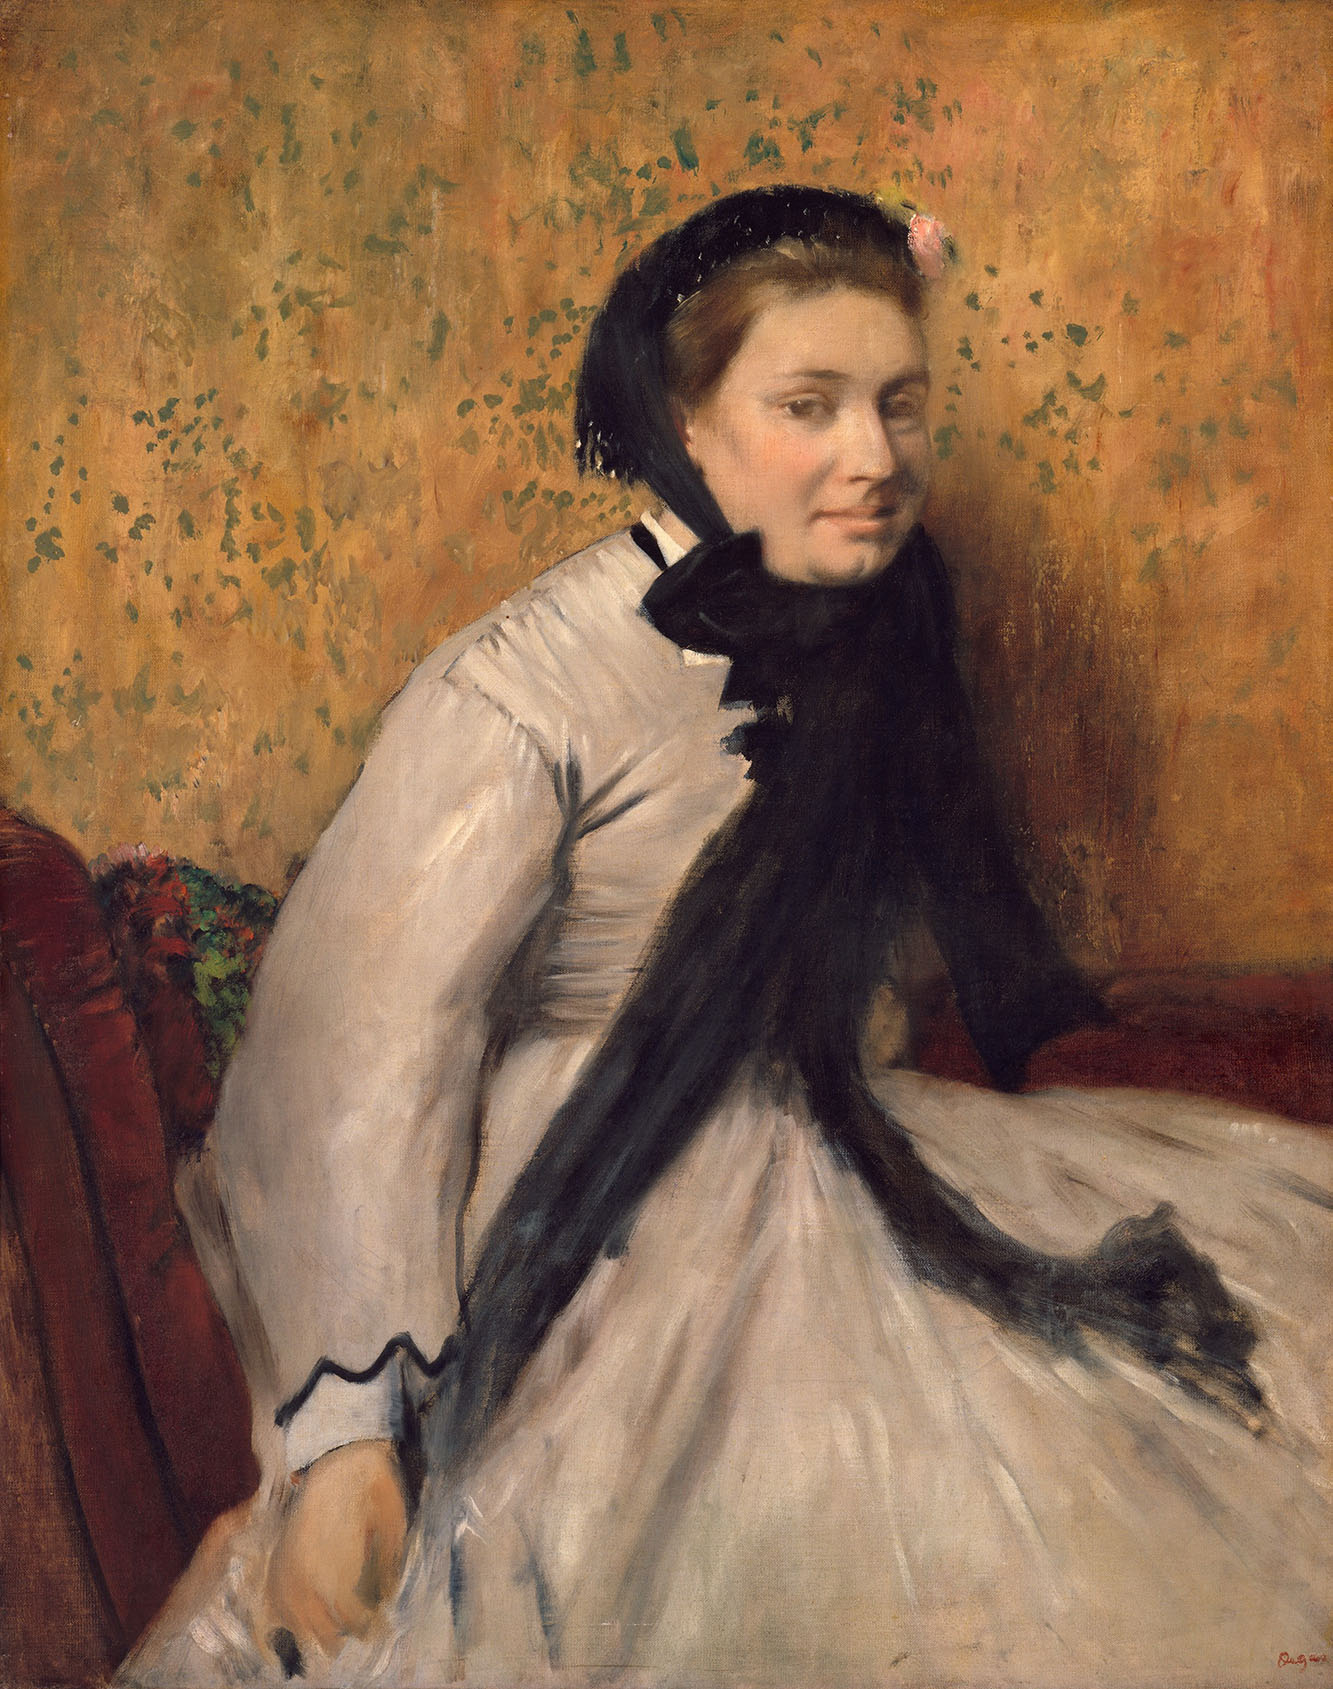 Эдгар Дега. "Портрет дамы в сером". 1865.